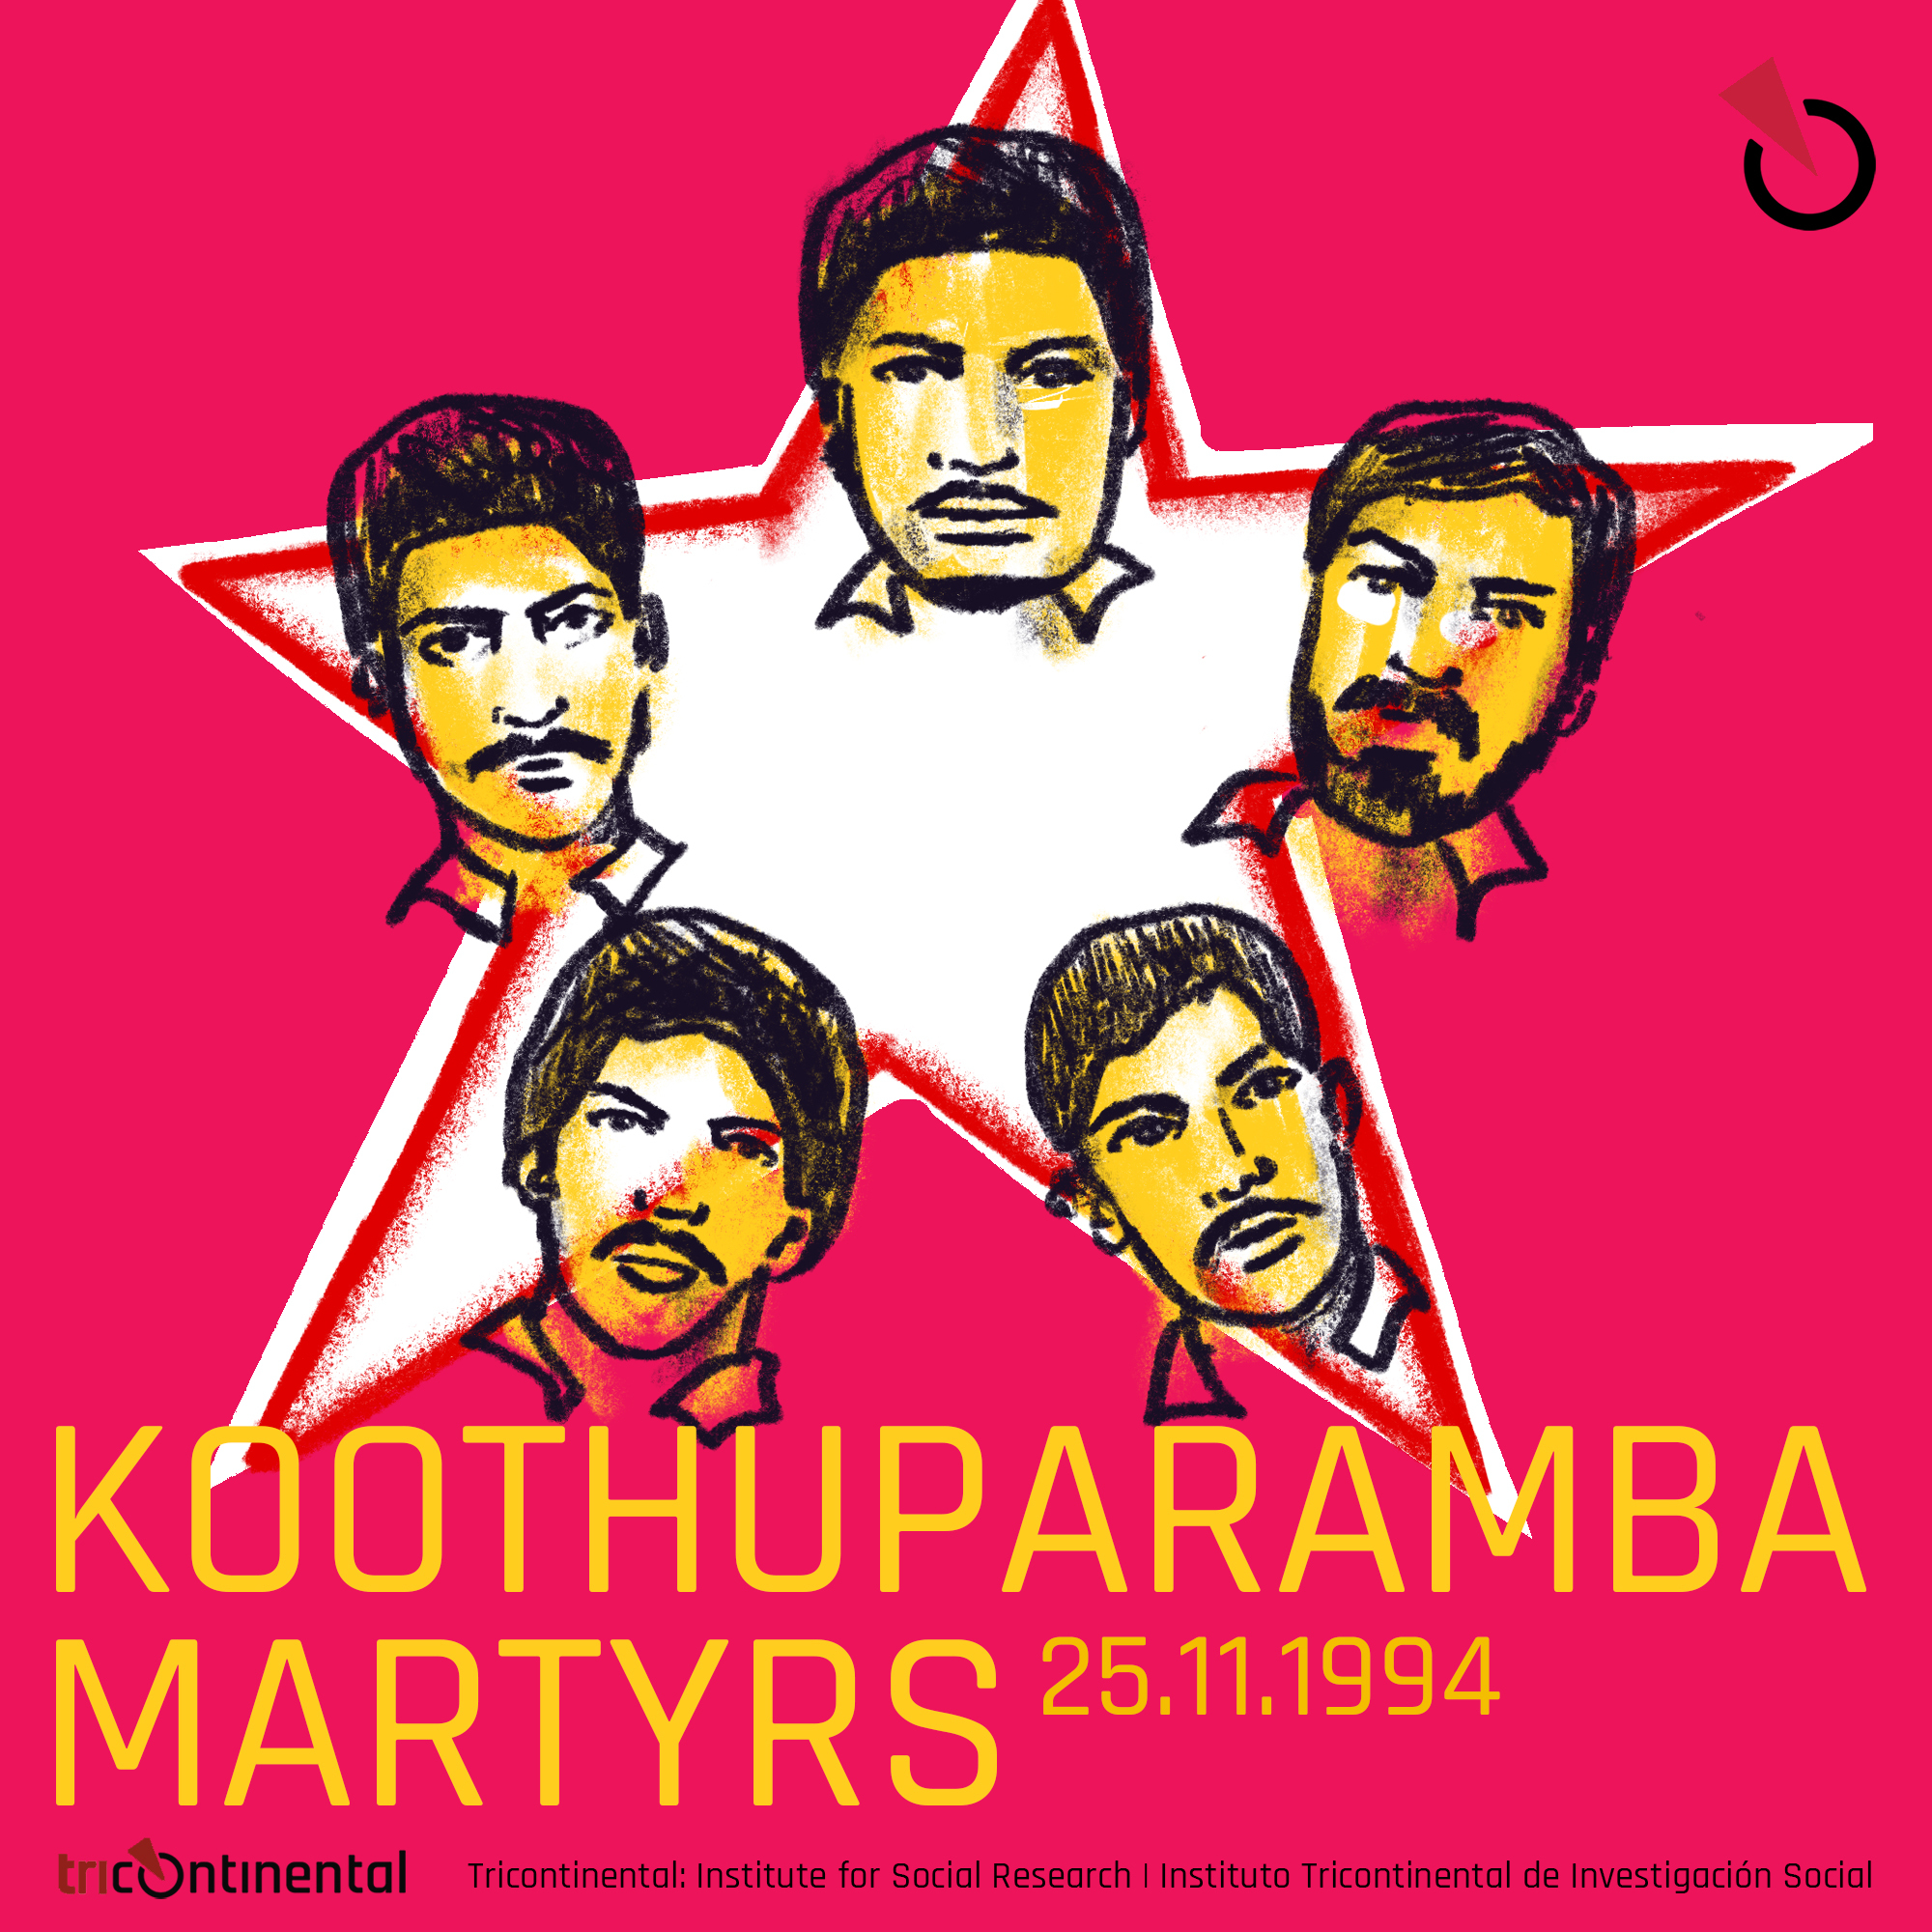 TBT - Koothuparamba martyrs